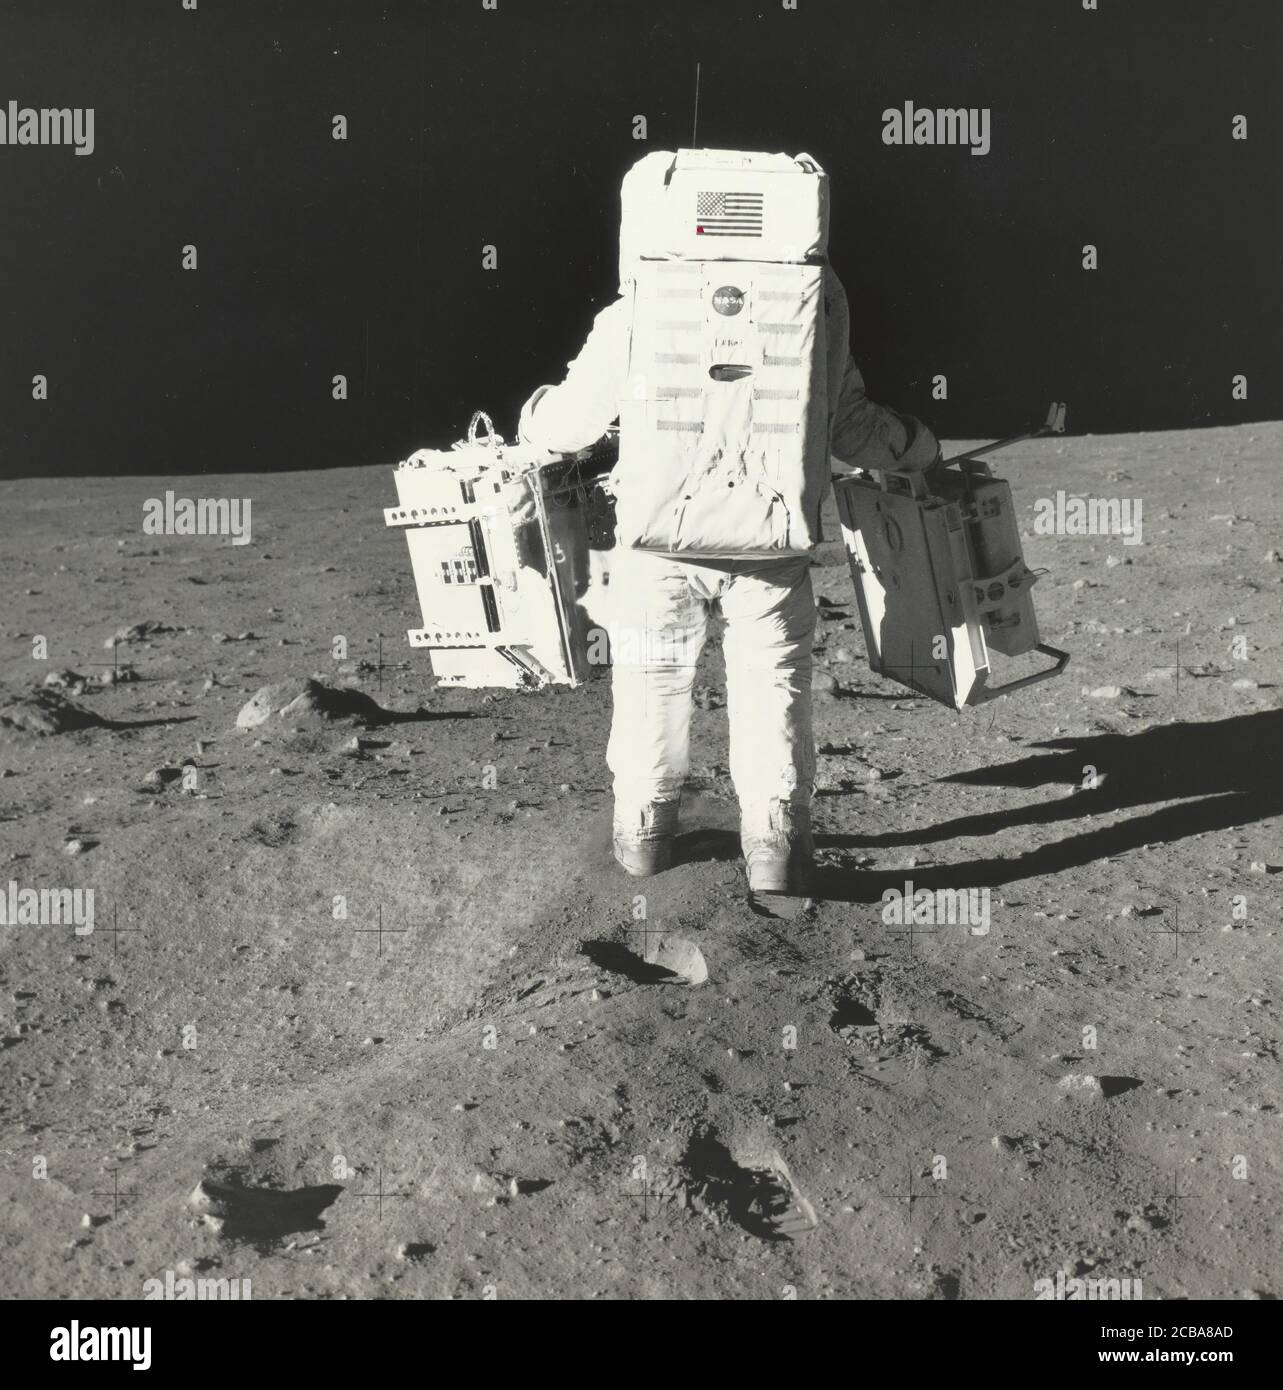 Buzz Aldrin sur la Lune avec les composantes du paquet des premières expériences scientifiques Apollo, 1969. Banque D'Images